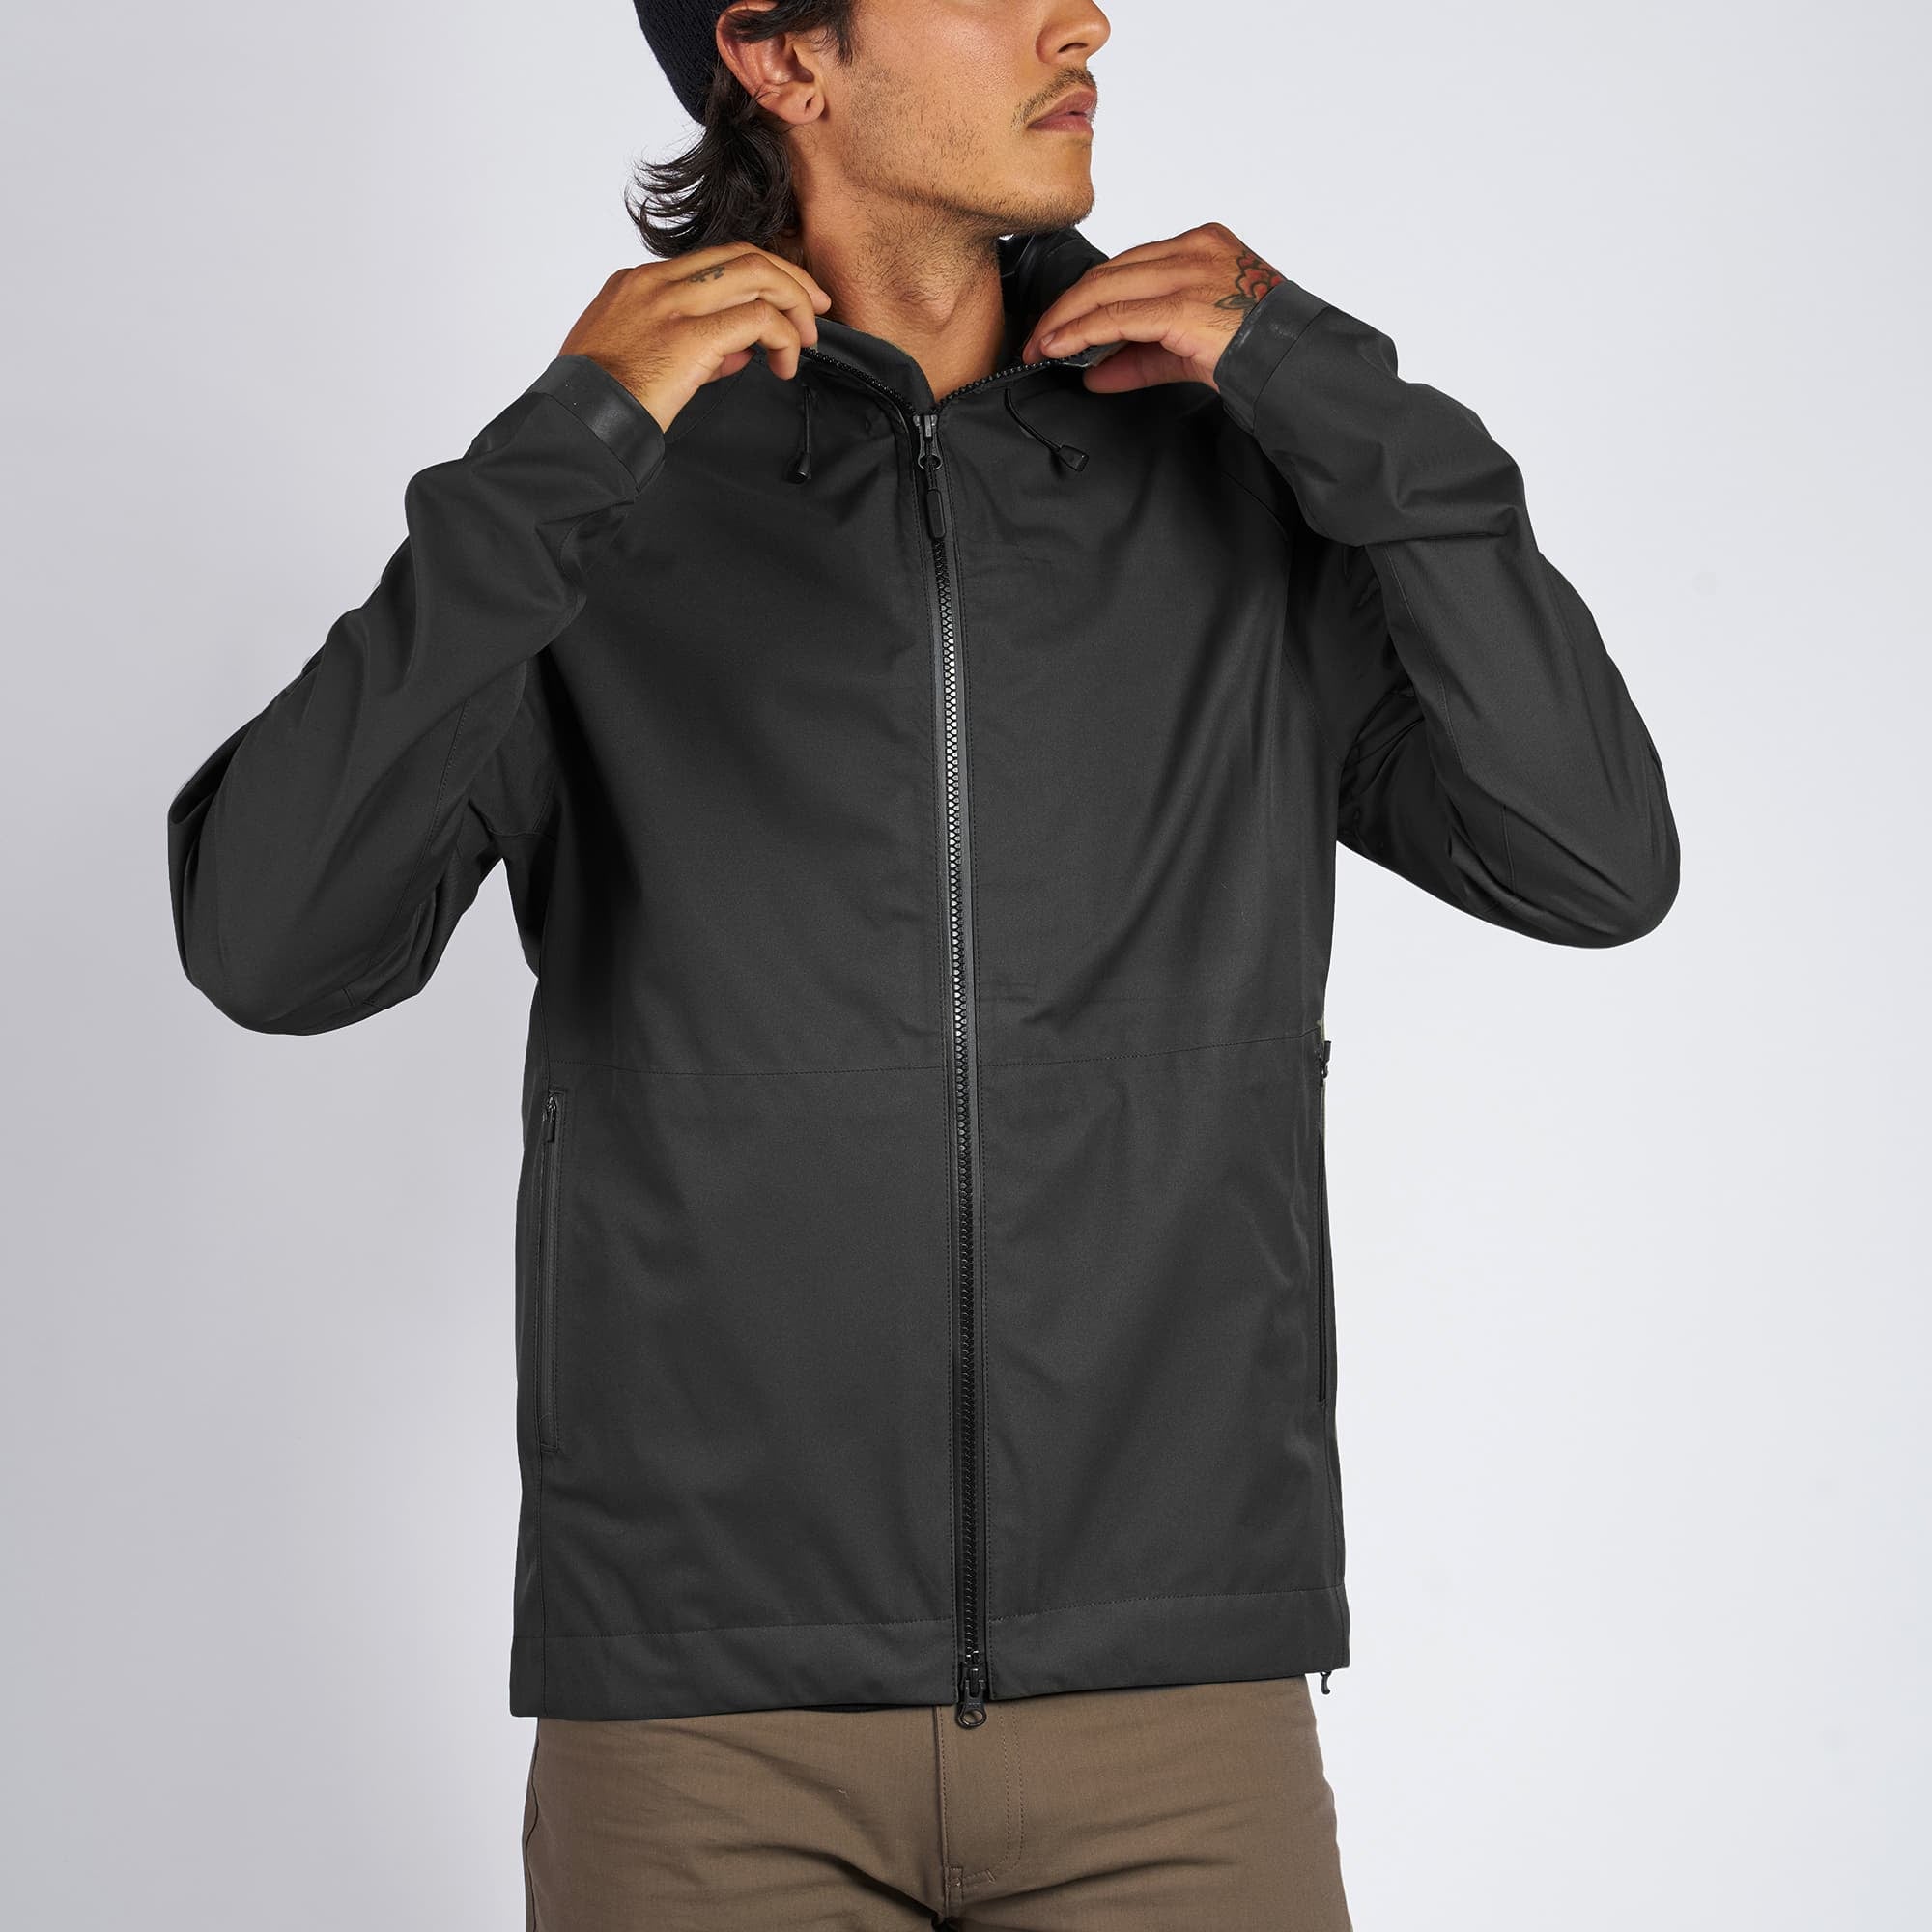 Waterproof rain jacket in black worn by a man front view